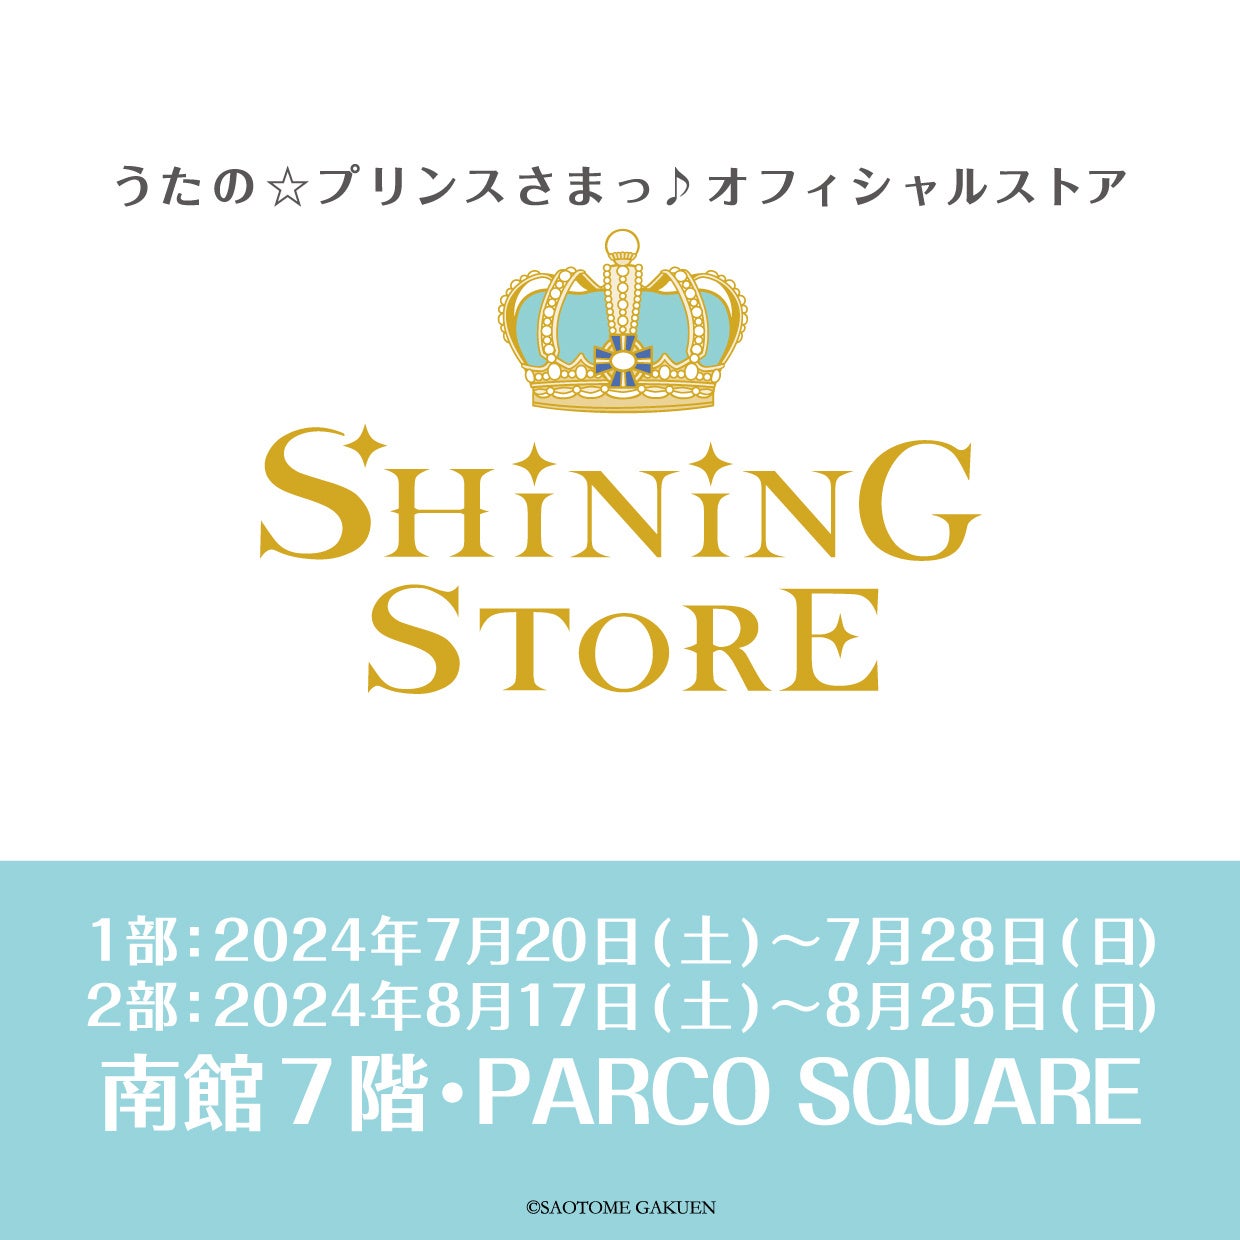 うたの☆プリンスさまっ♪オフィシャルストア『SHINING STORE』名古屋 P A R C Oで開催！